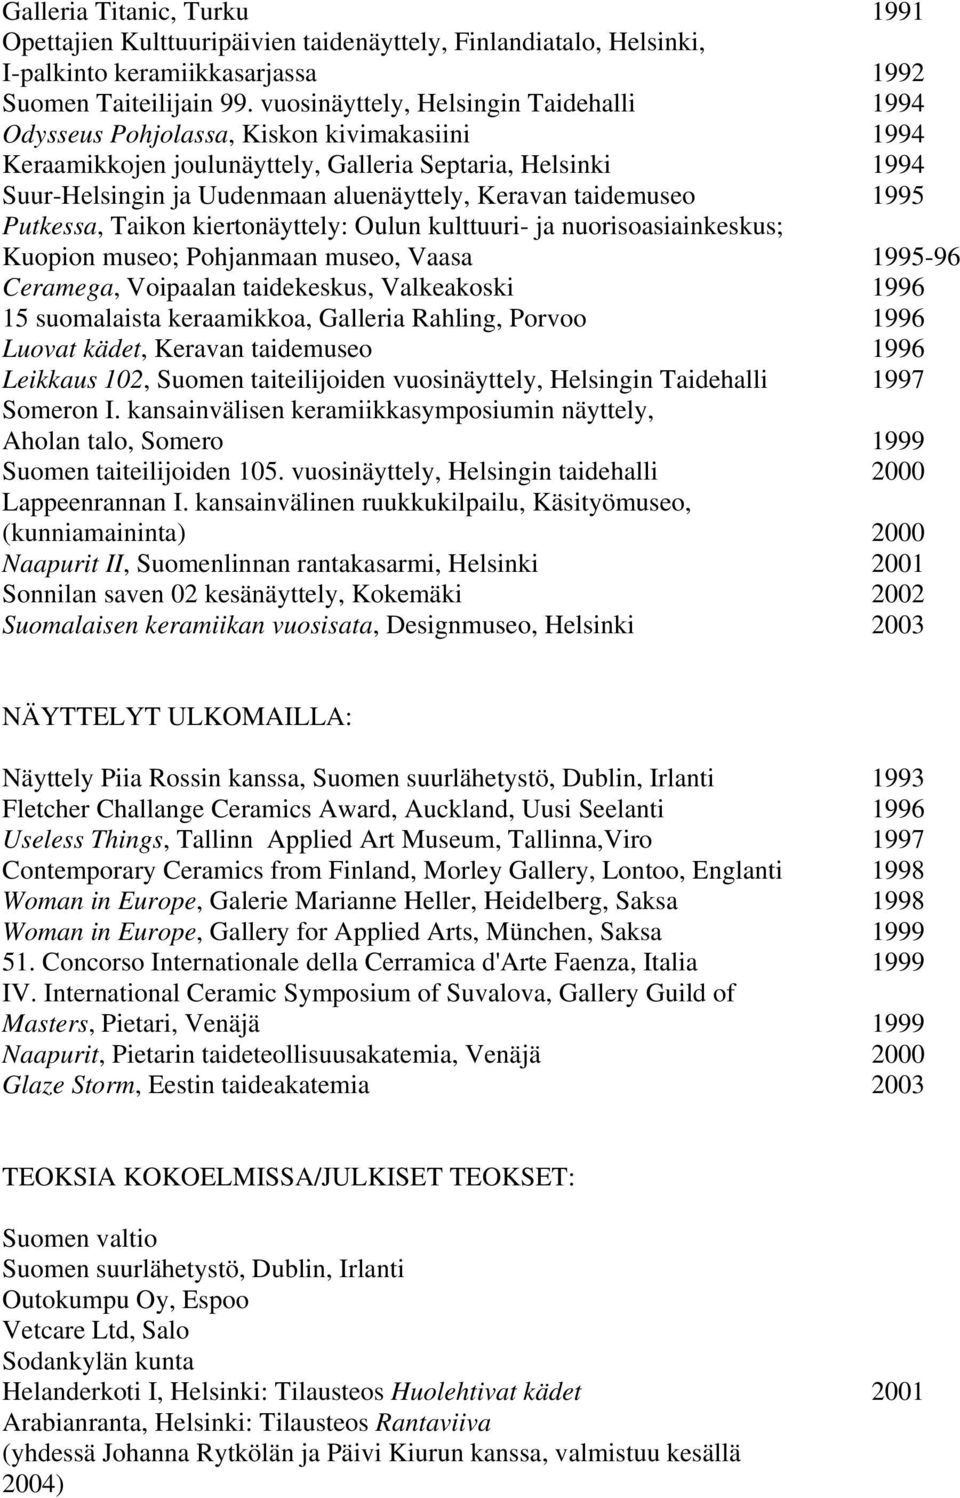 taidemuseo 1995 Putkessa, Taikon kiertonäyttely: Oulun kulttuuri- ja nuorisoasiainkeskus; Kuopion museo; Pohjanmaan museo, Vaasa 1995-96 Ceramega, Voipaalan taidekeskus, Valkeakoski 1996 15